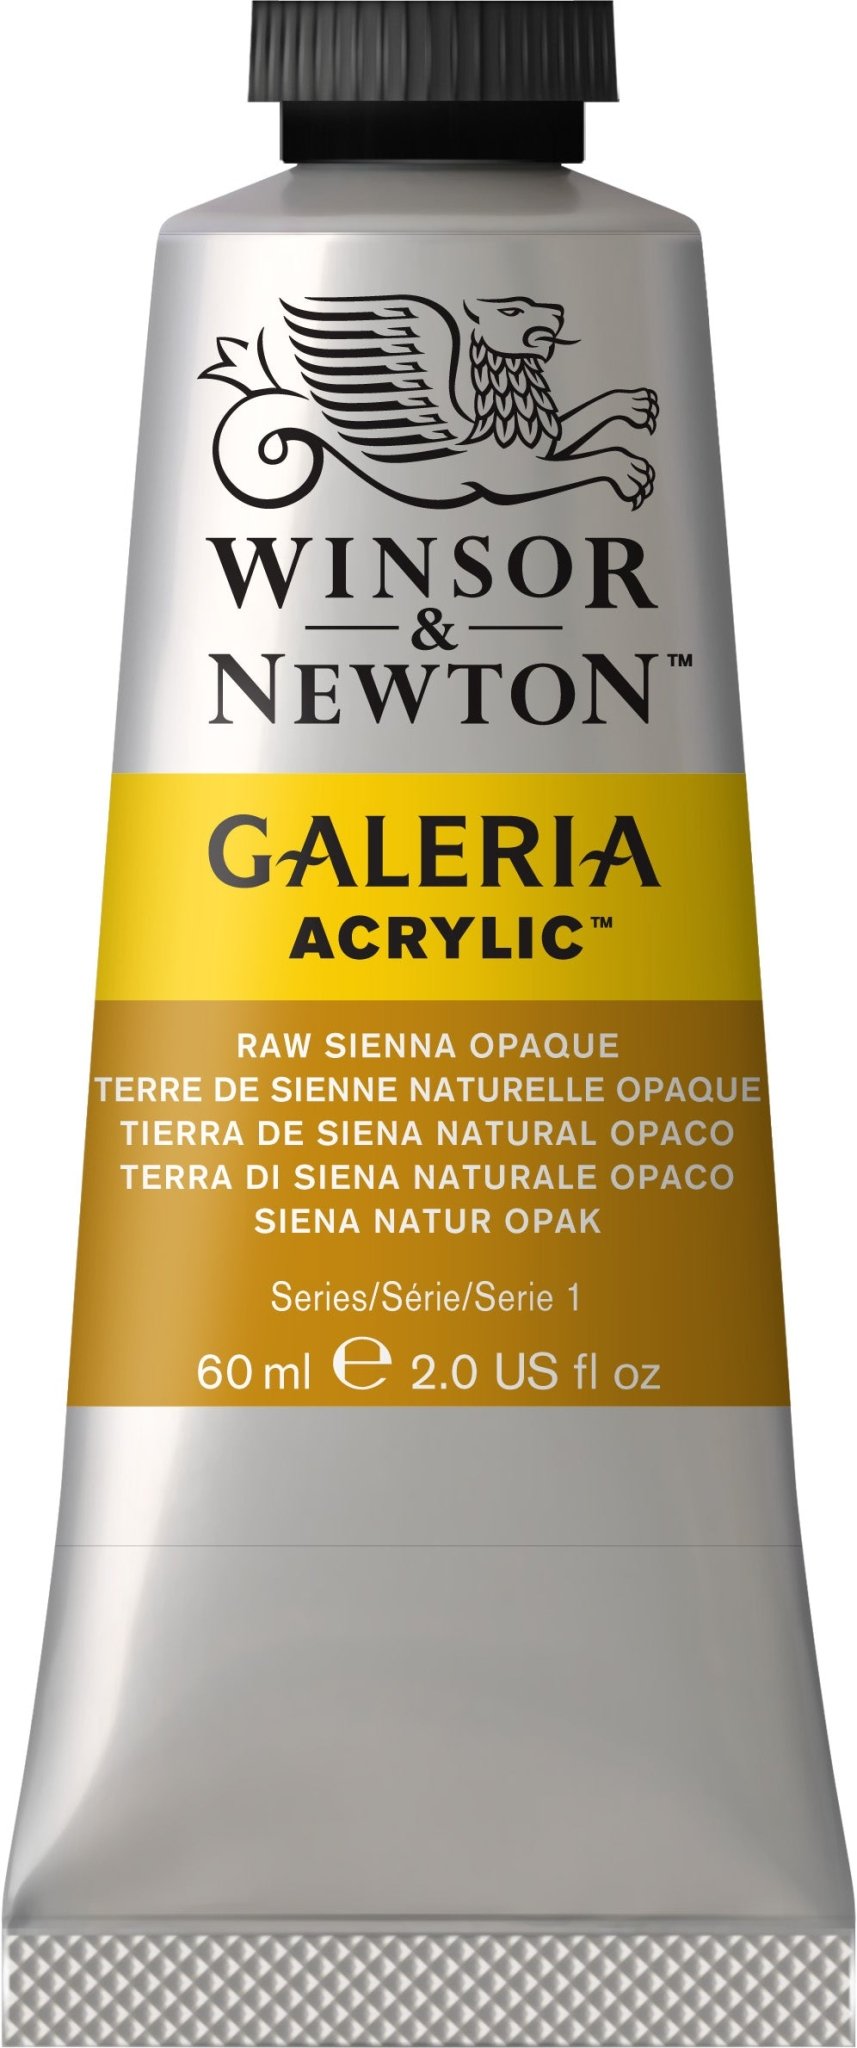 W & N Galeria Acrylic 60ml Raw Sienna Opaque - theartshop.com.au